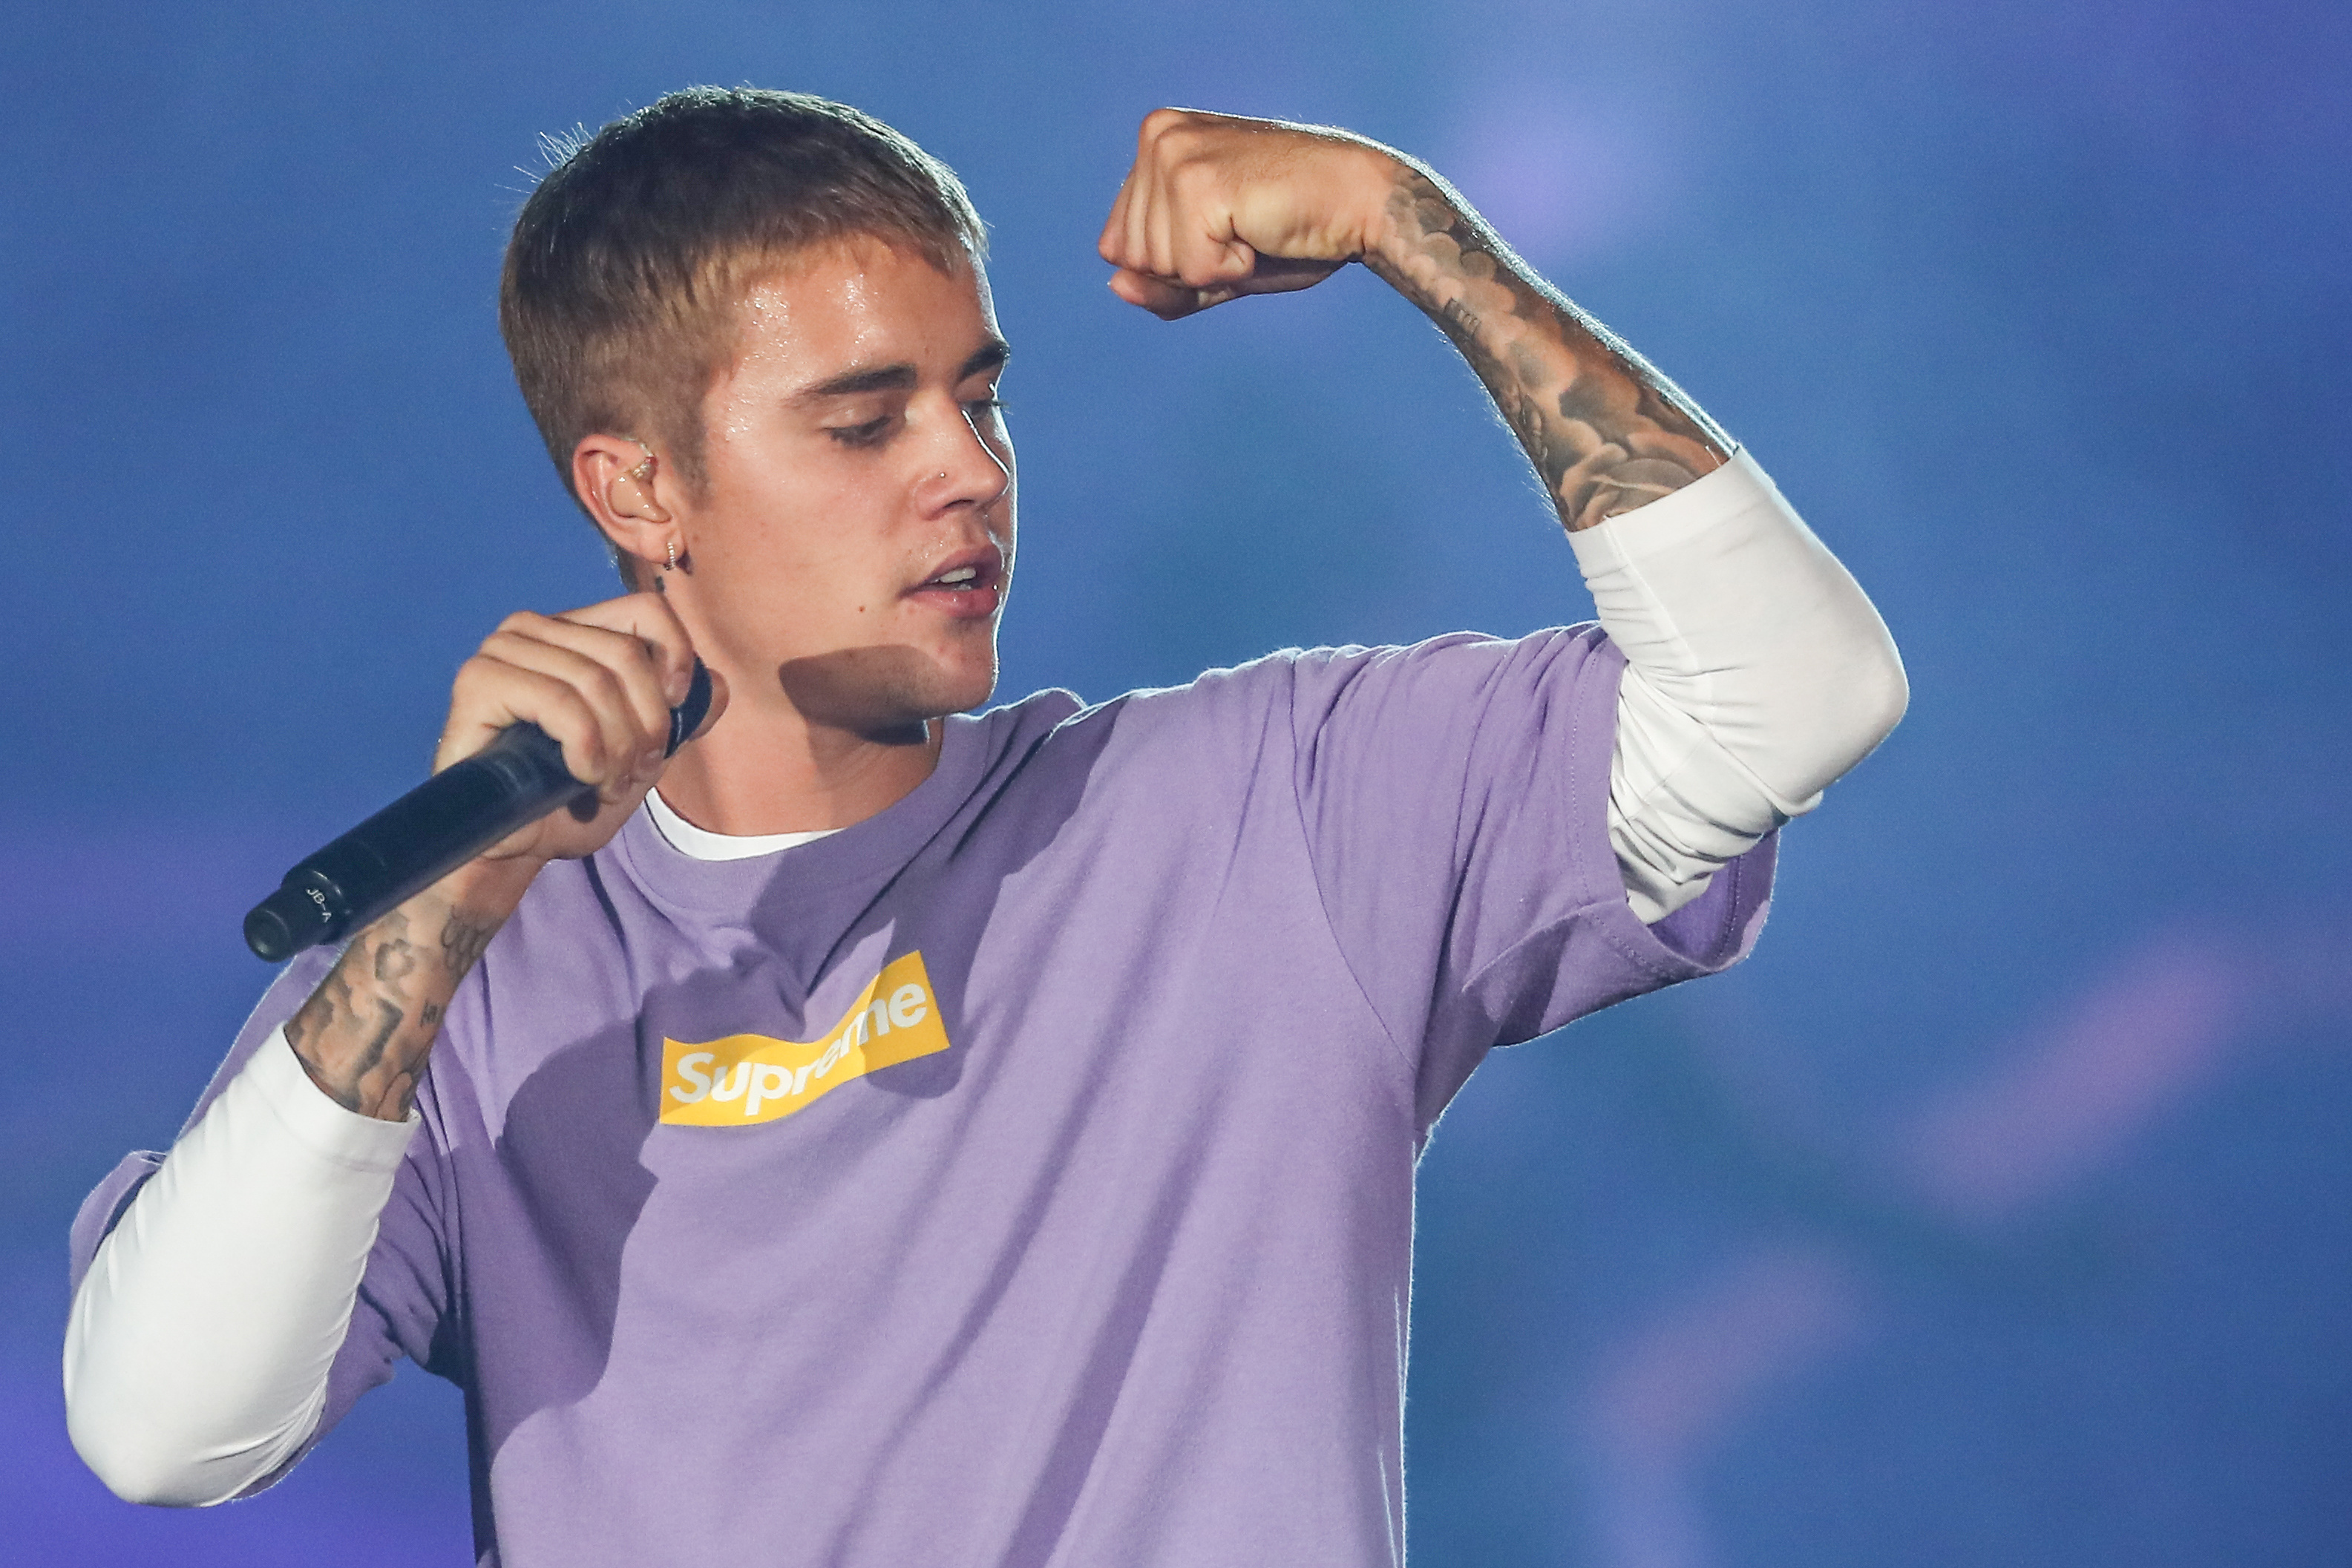 Justin Bieber uppträdde i Sverige och fick oväntat mycket kritik.